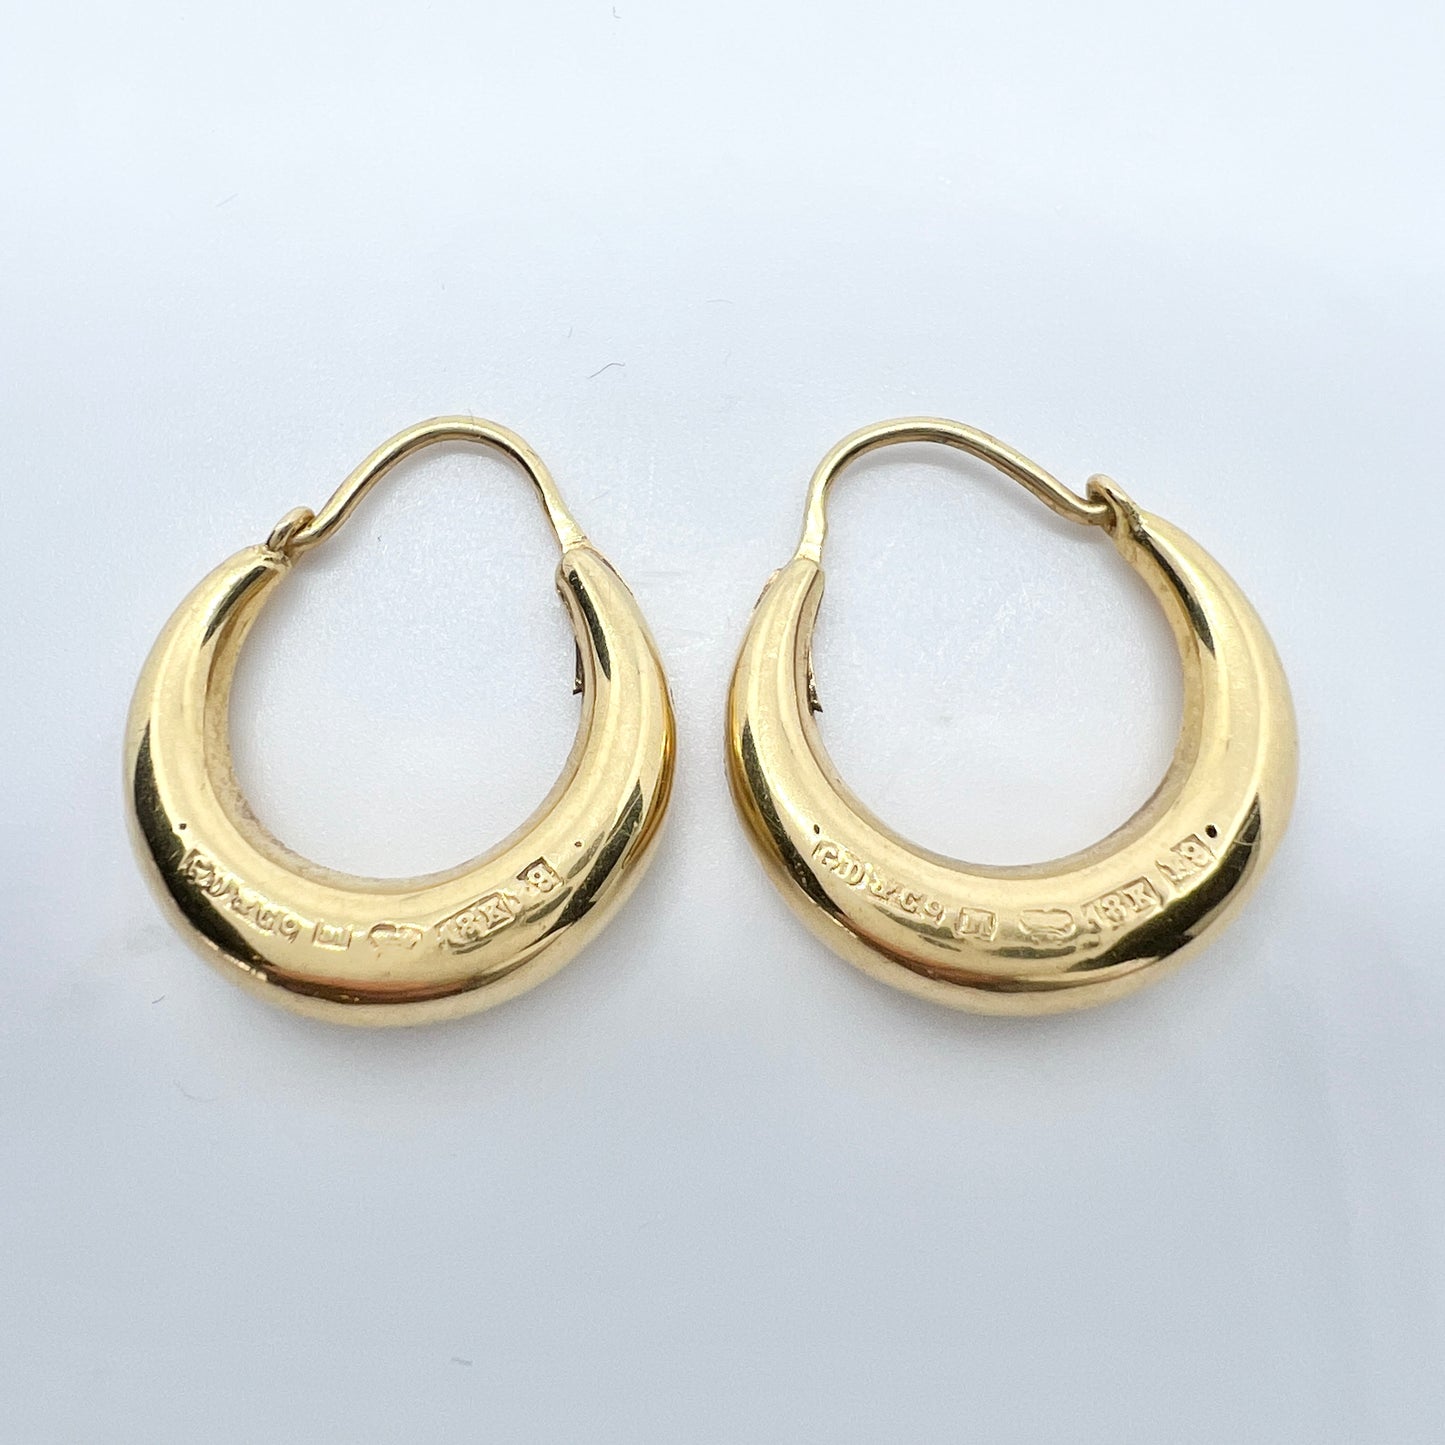 G Dahlgren, Sweden 1956. Vintage 18k Gold Earrings.